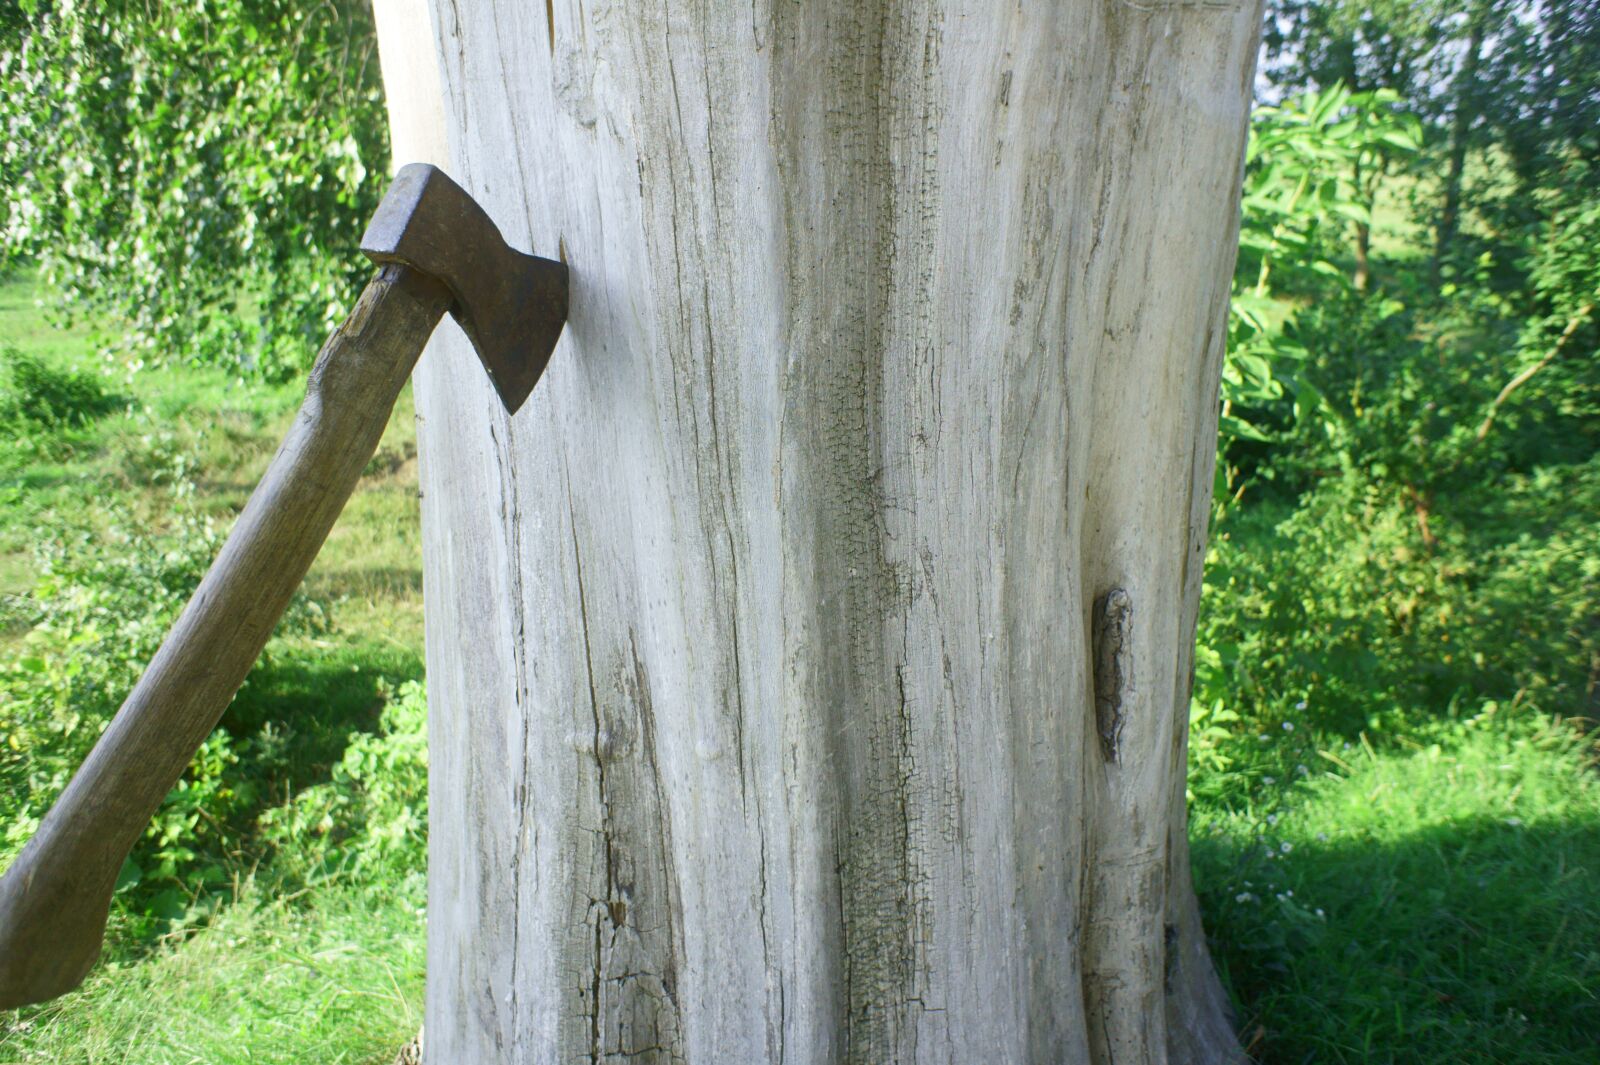 Sony Alpha NEX-5 + Sony E 16mm F2.8 sample photo. Axe, tree, dry wood photography